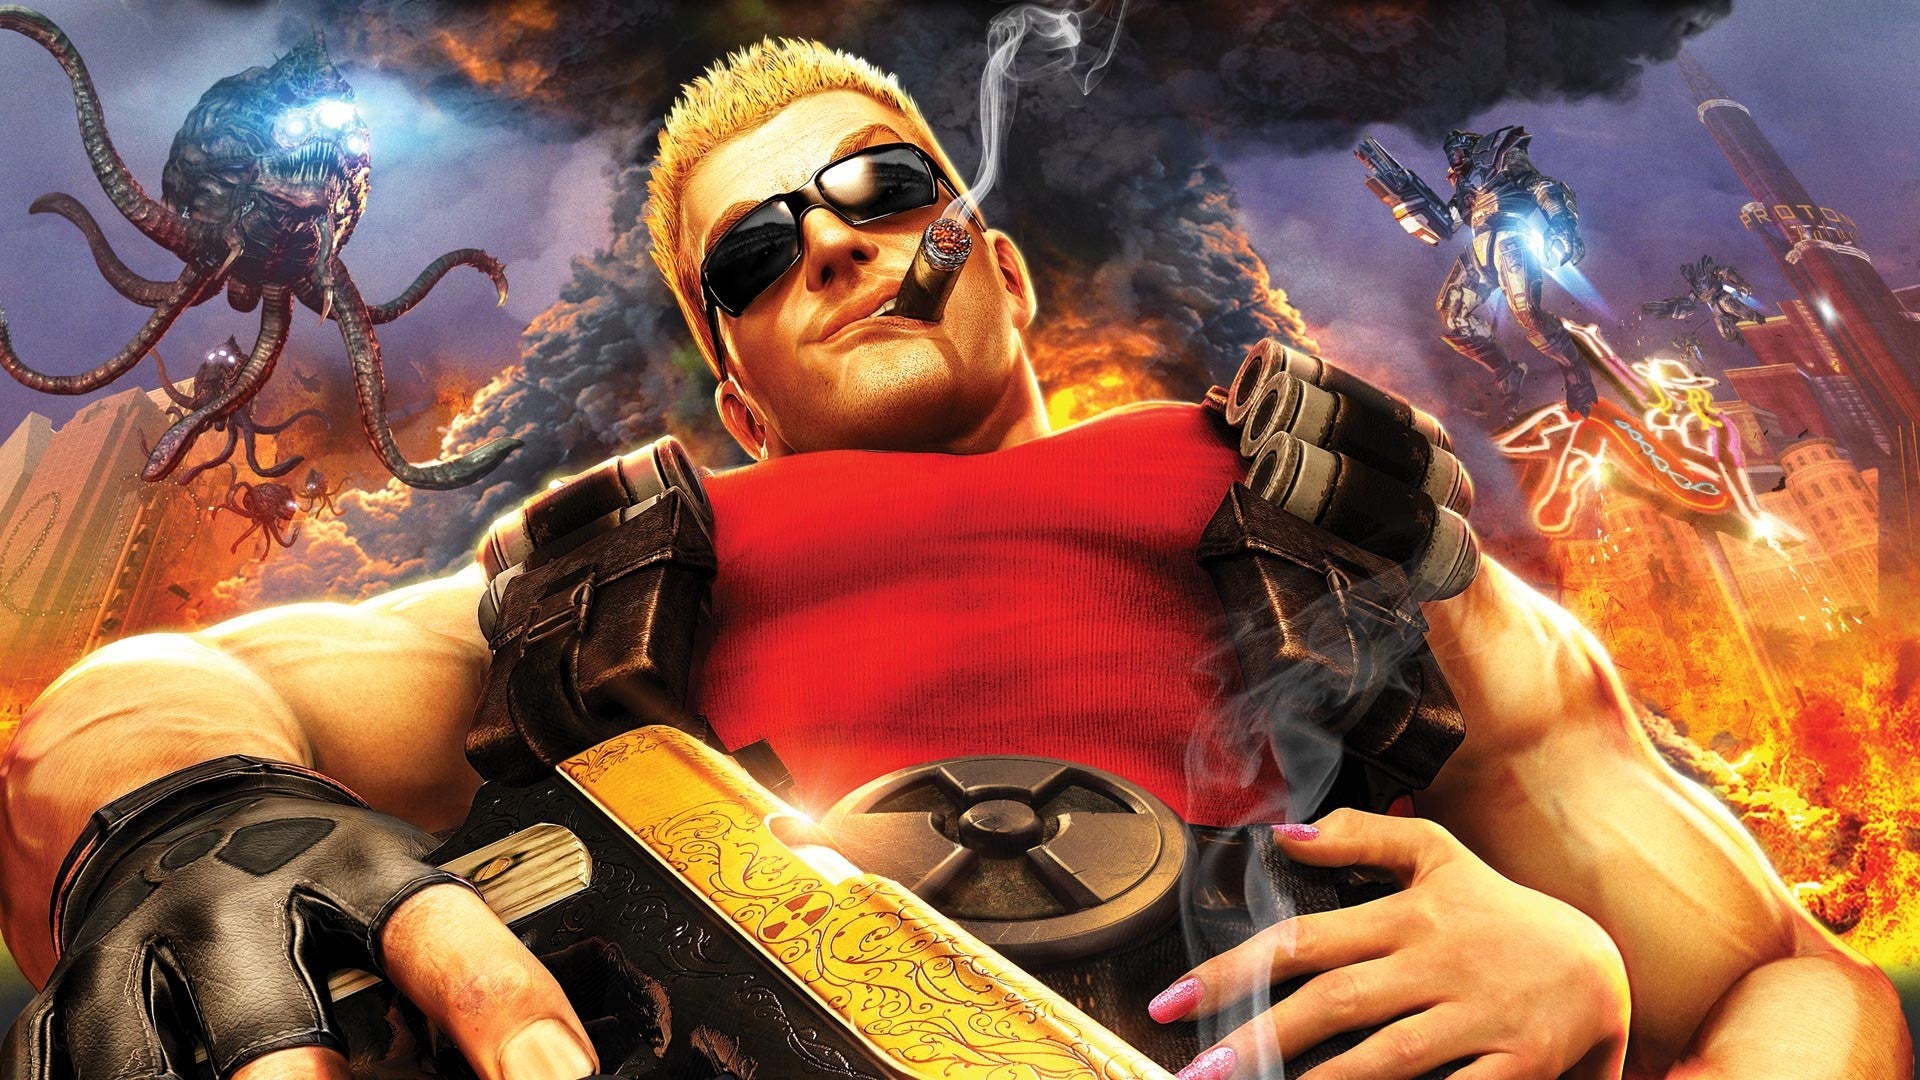 Image for E3 2001 iteration of Duke Nukem Forever has leaked